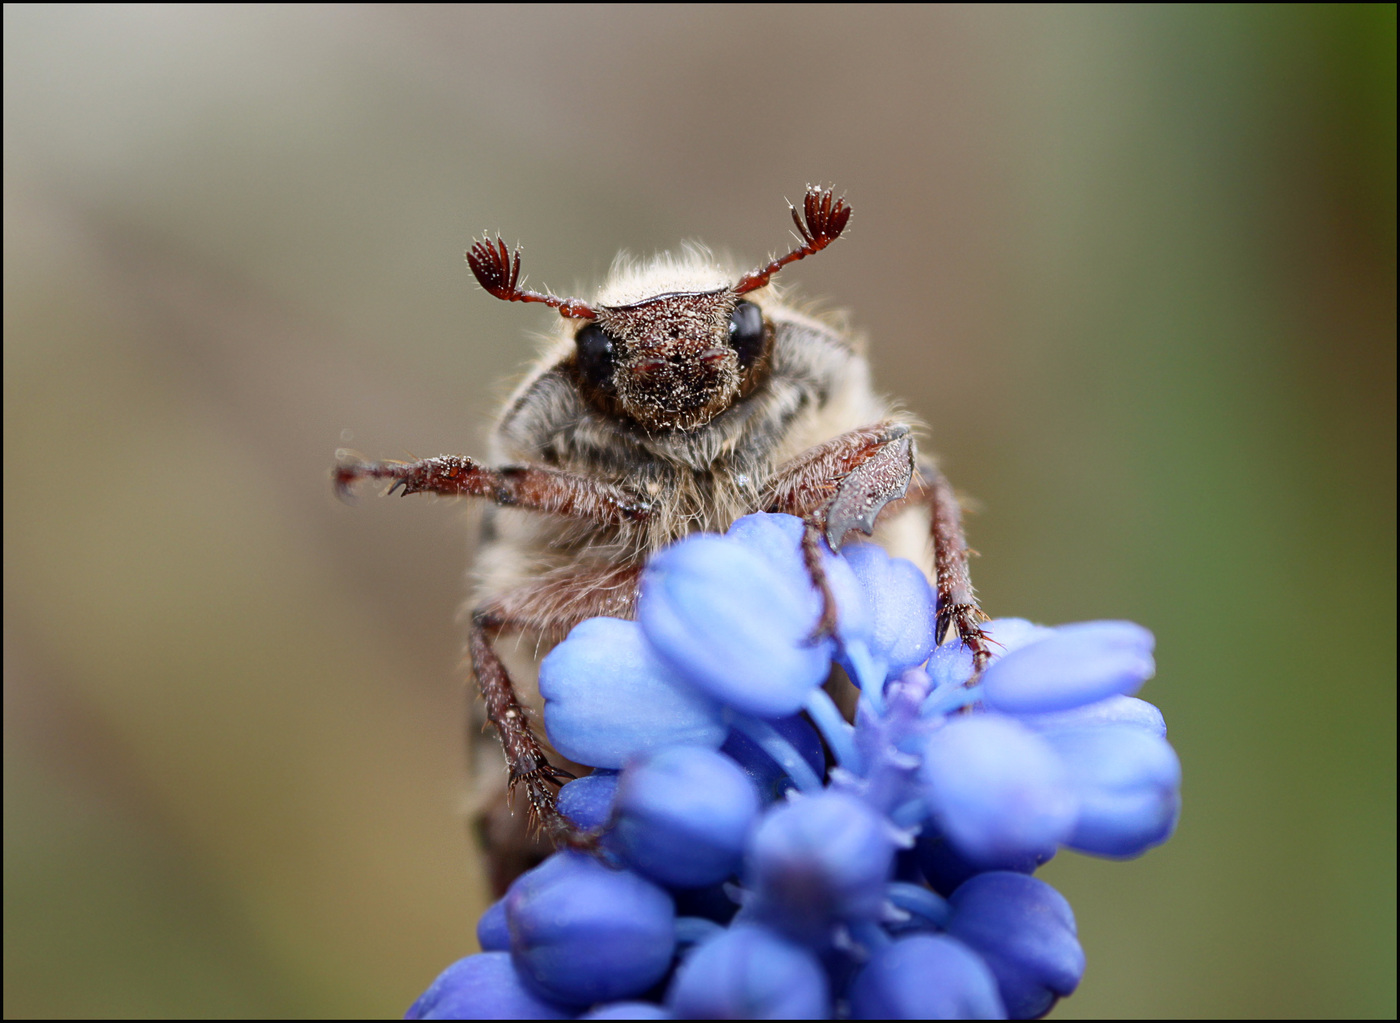 Eastern beetle on a blue flower